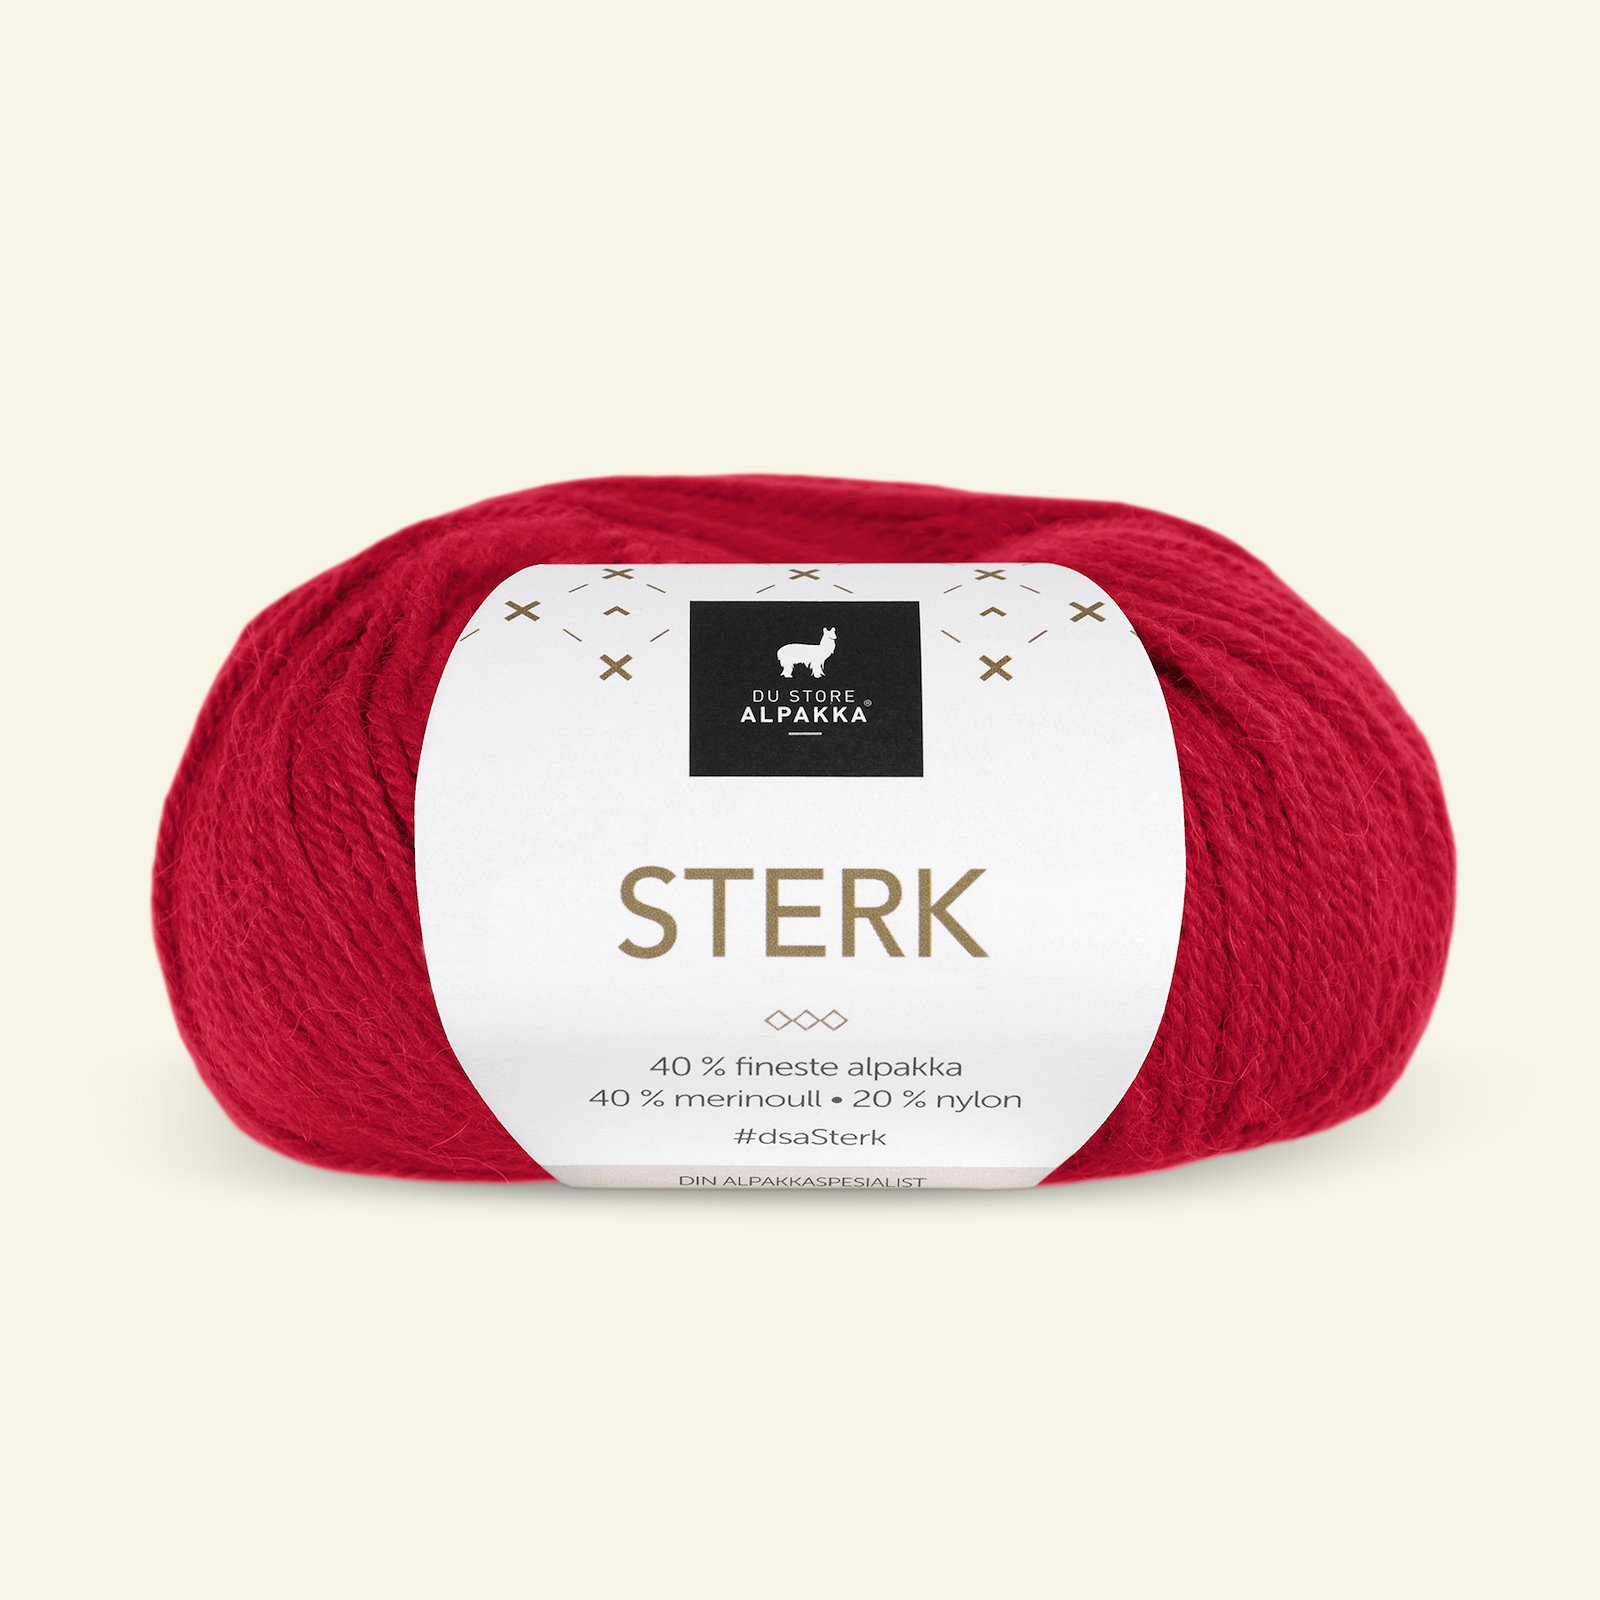 Du Store Alpakka, alpaca merino mixed yarn "Sterk", red (828) 90000668_pack